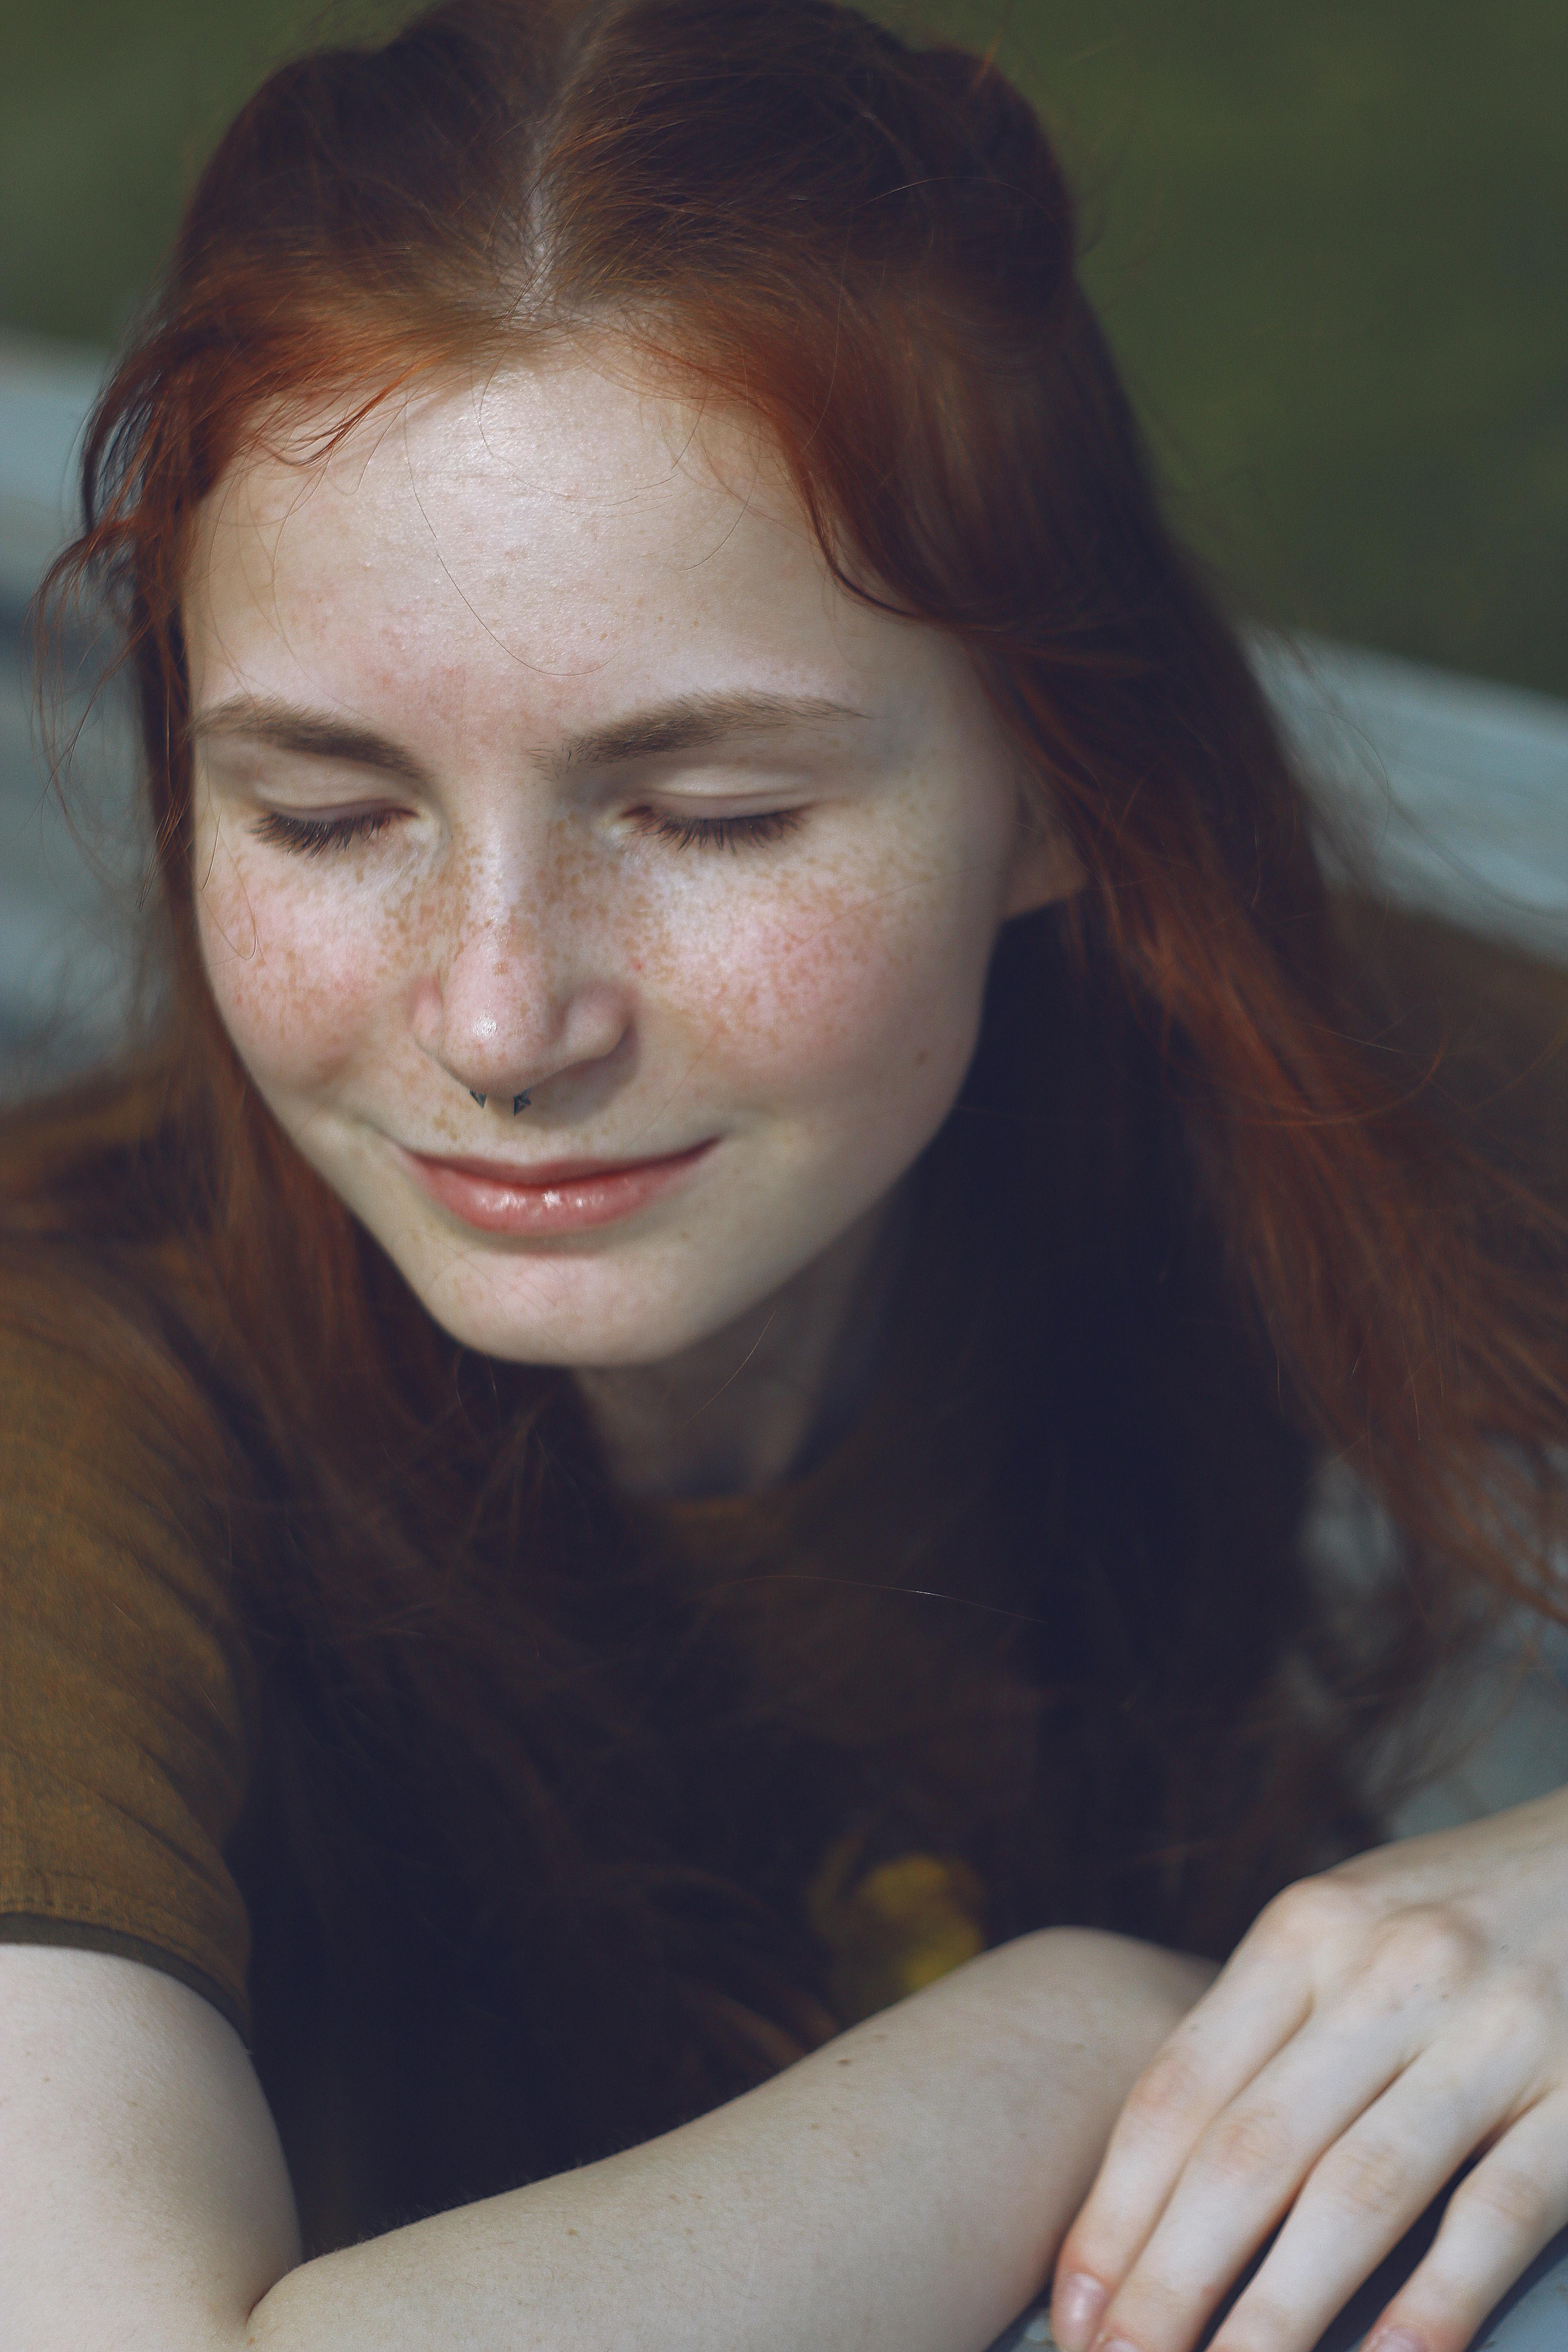 Une fille rousse heureuse | Source : Pexels